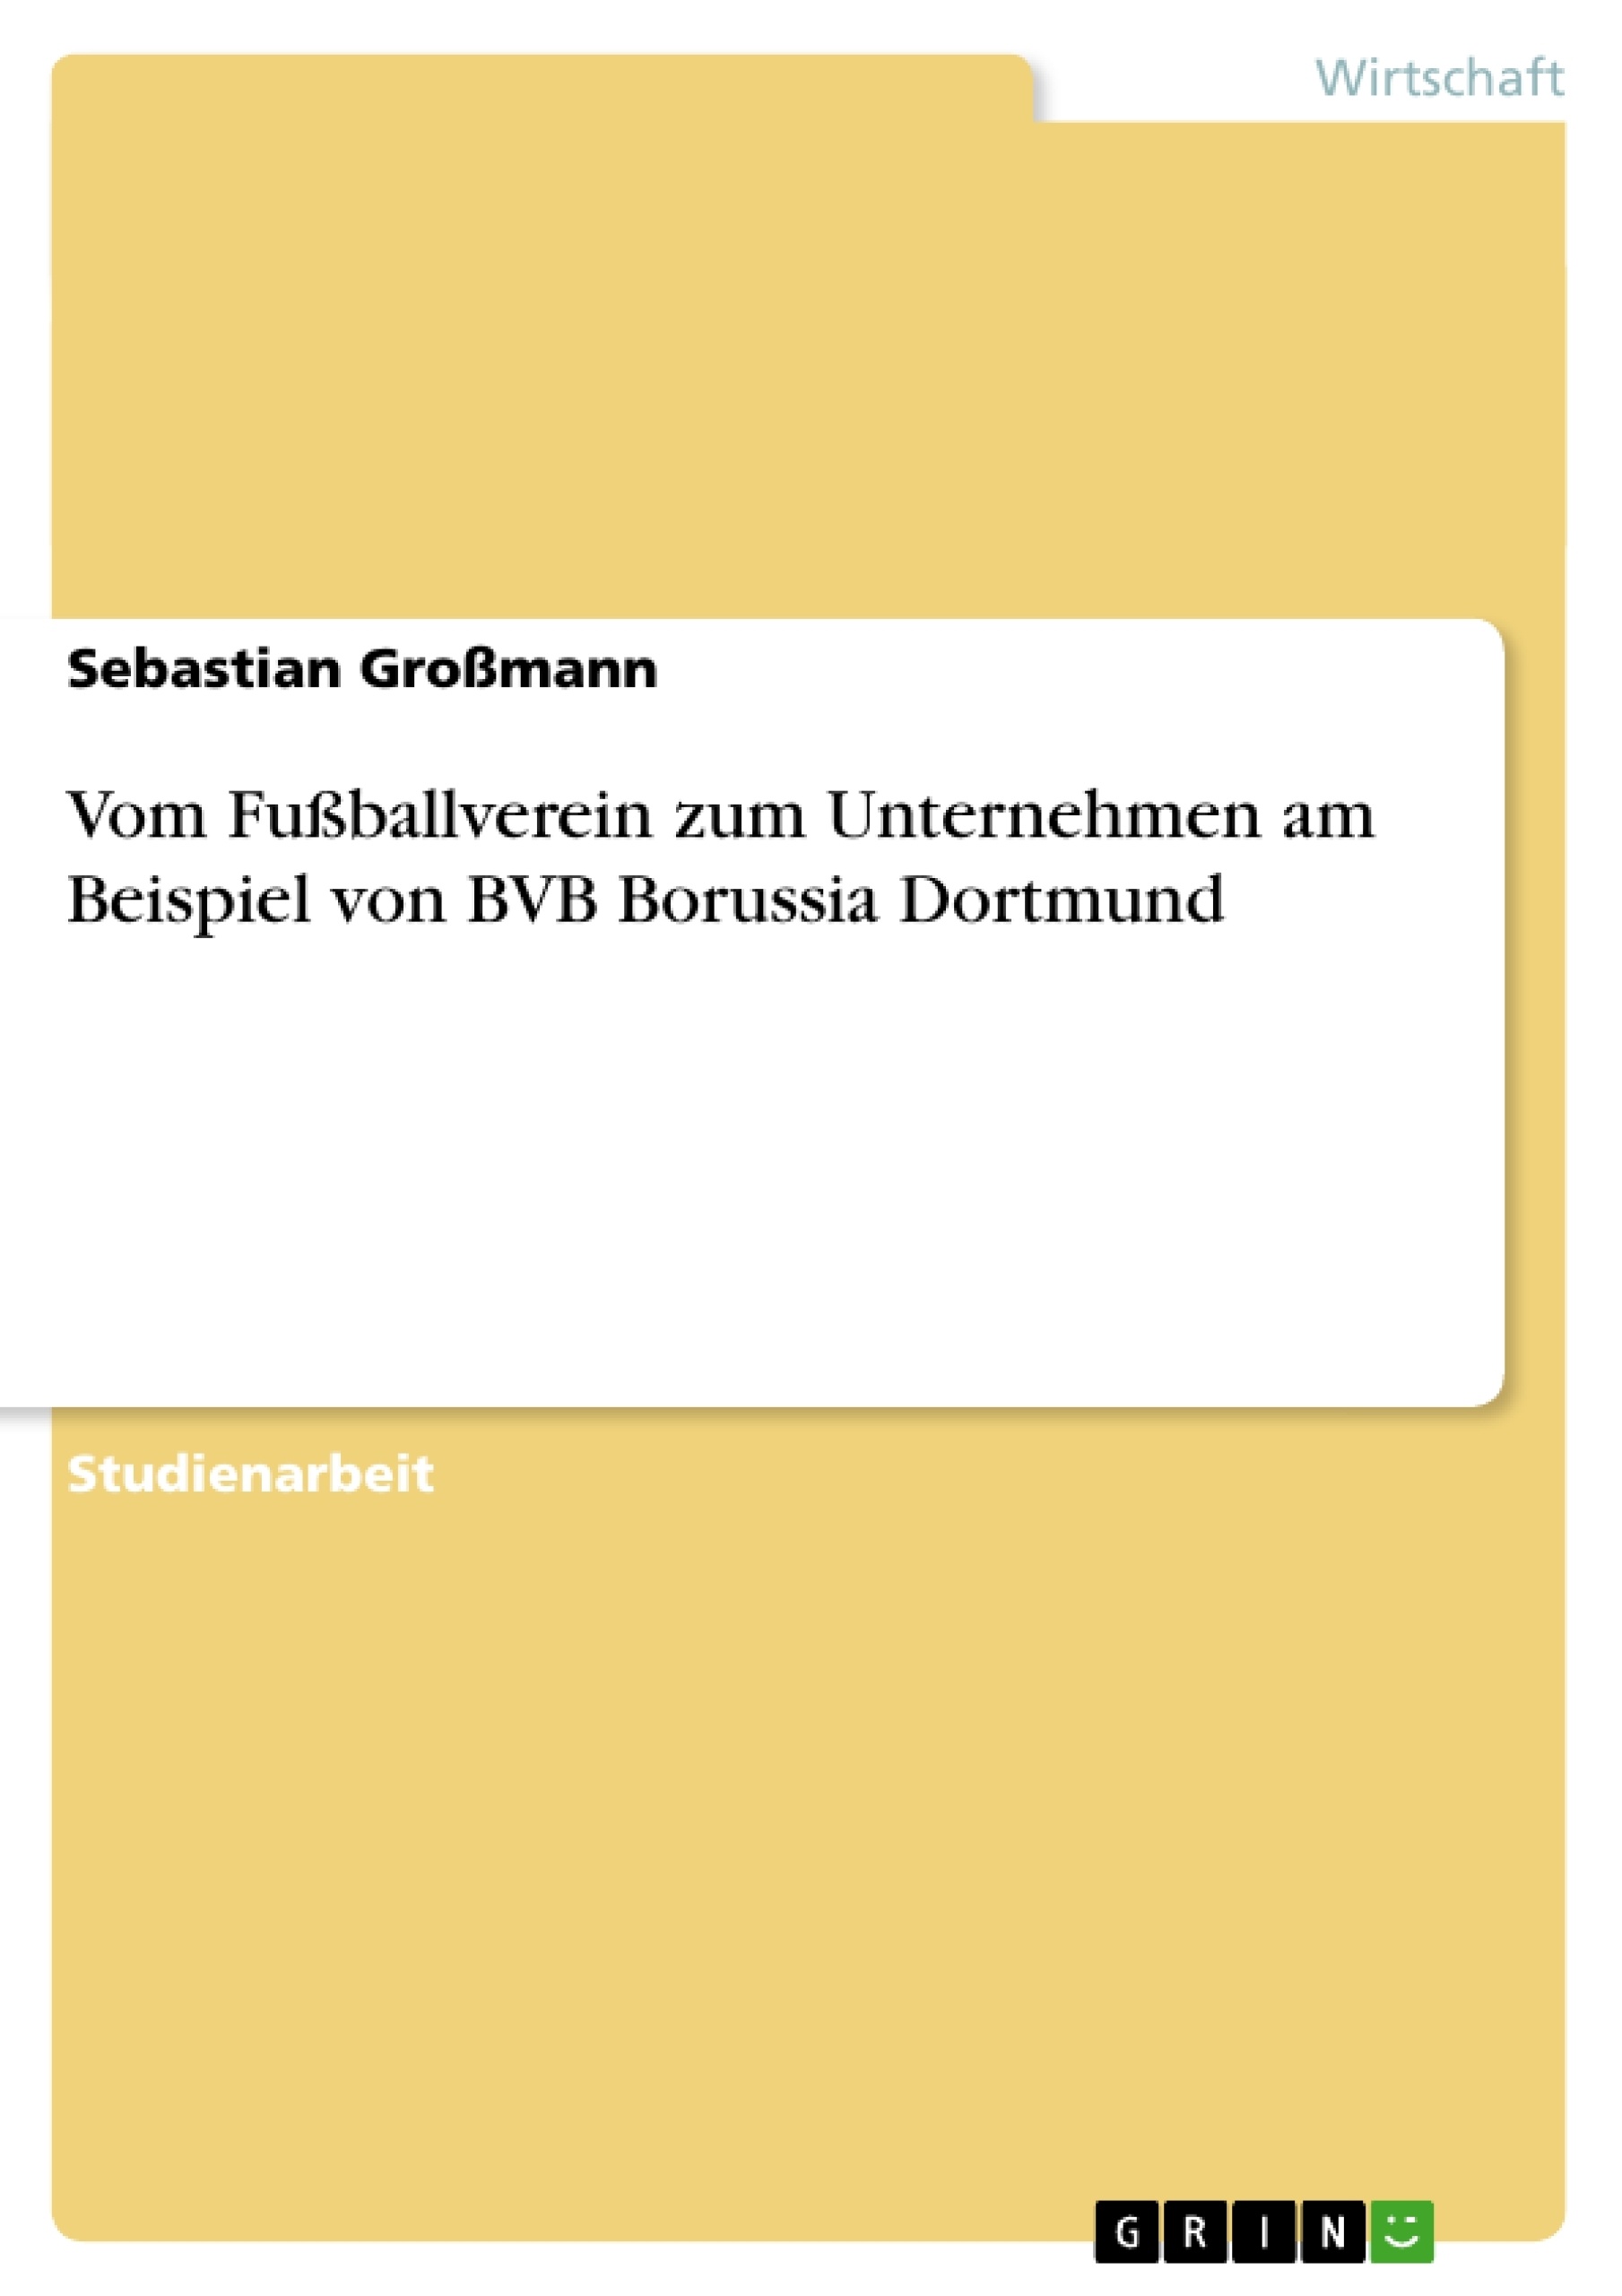 Titre: Vom Fußballverein zum Unternehmen am Beispiel von BVB Borussia Dortmund